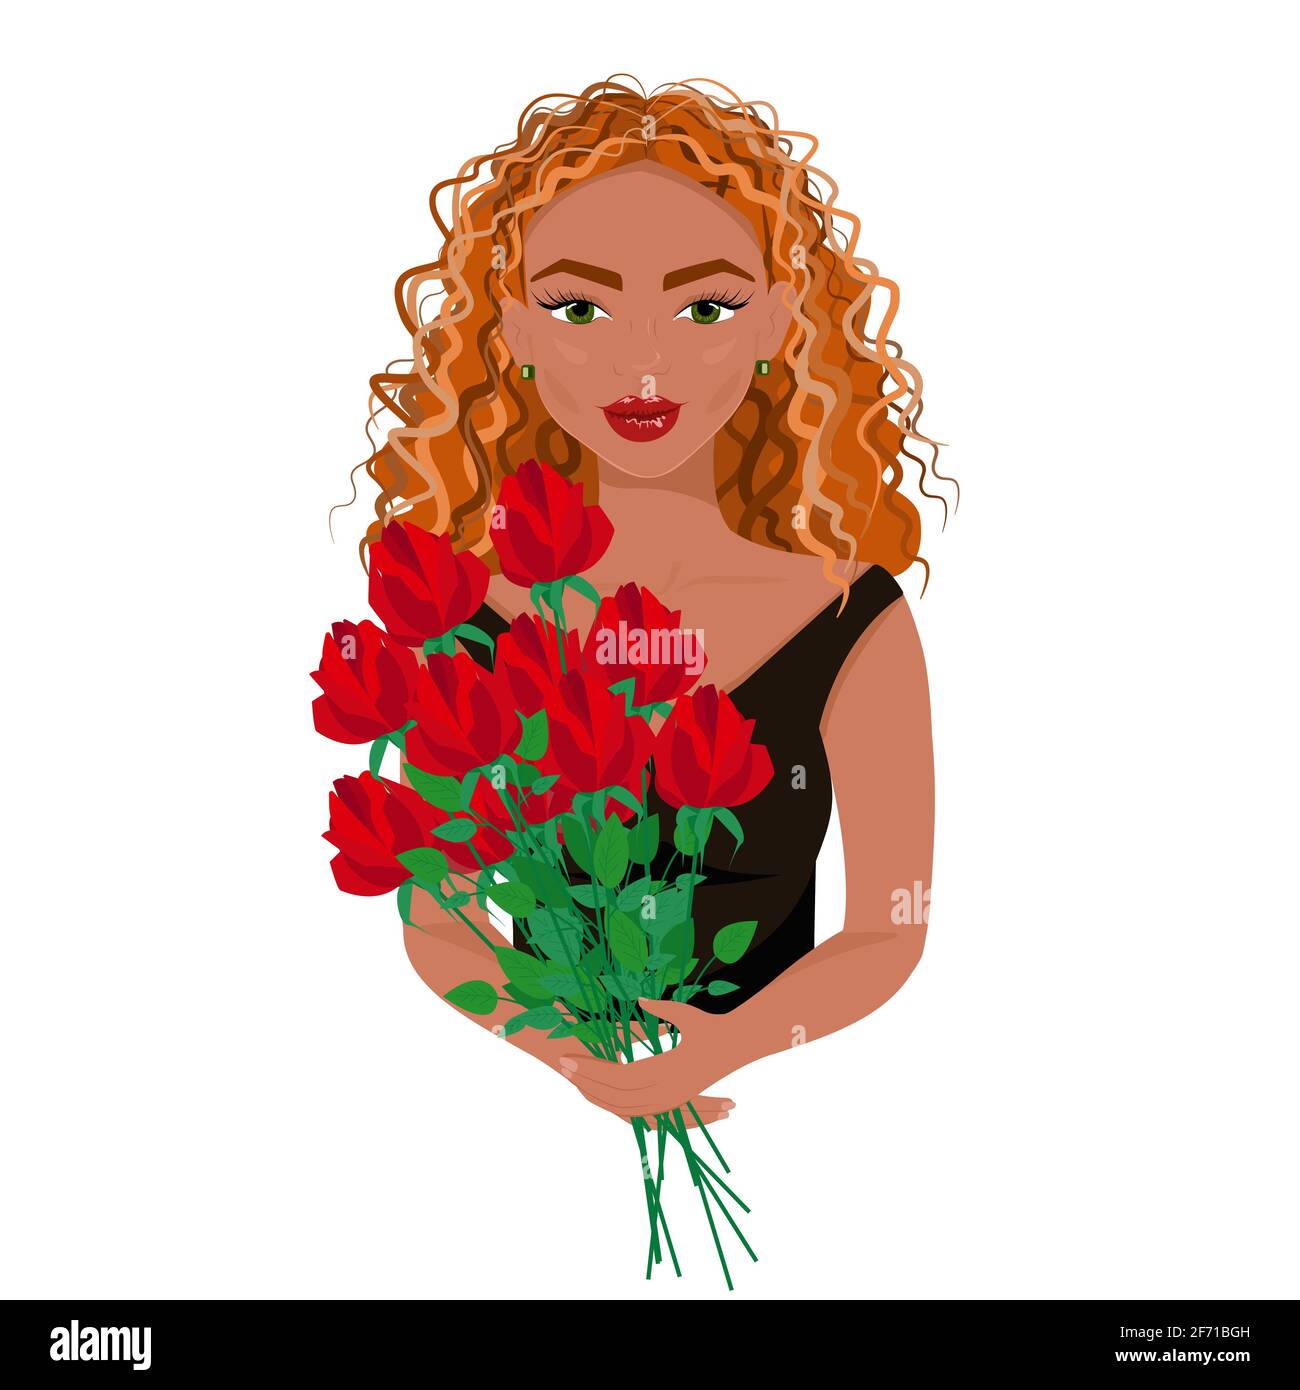 La fille en robe noire avec un bouquet de roses rouges dans ses mains, belle femme à cheveux rouges avec maquillage, belle avatar de femme, illustration vectorielle Illustration de Vecteur